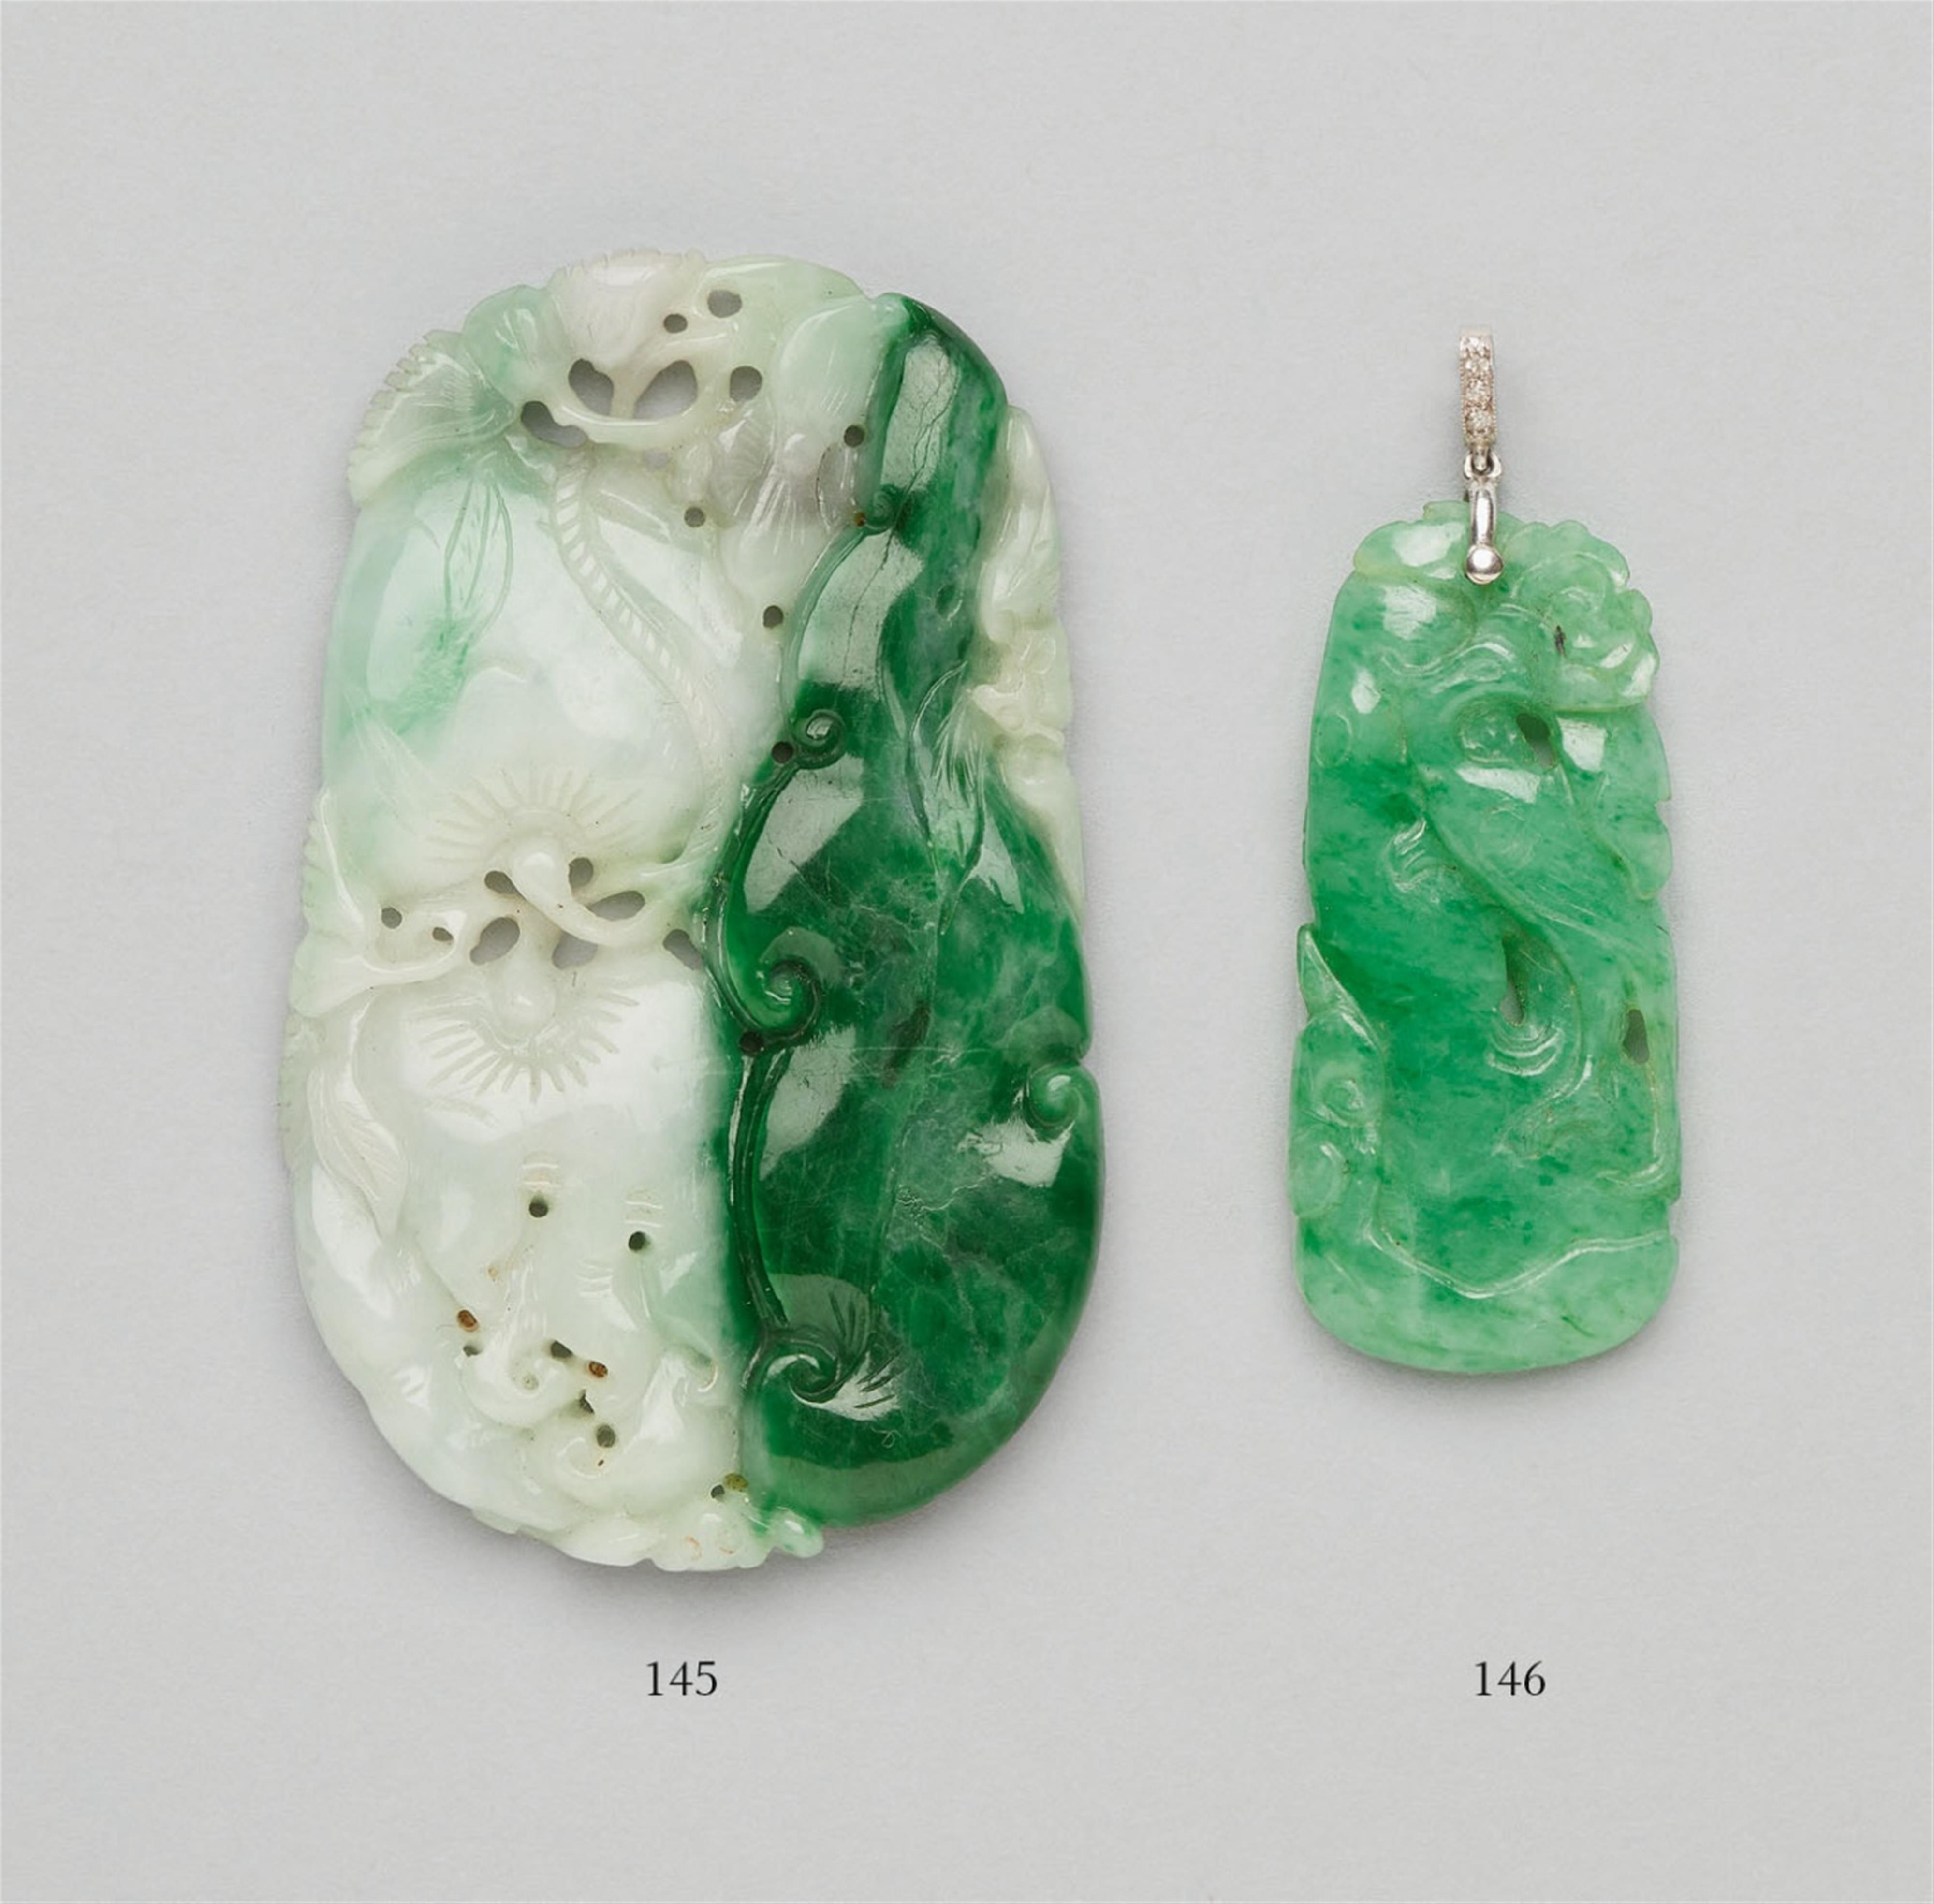 A fine, apple-green jadeite pendant - image-3